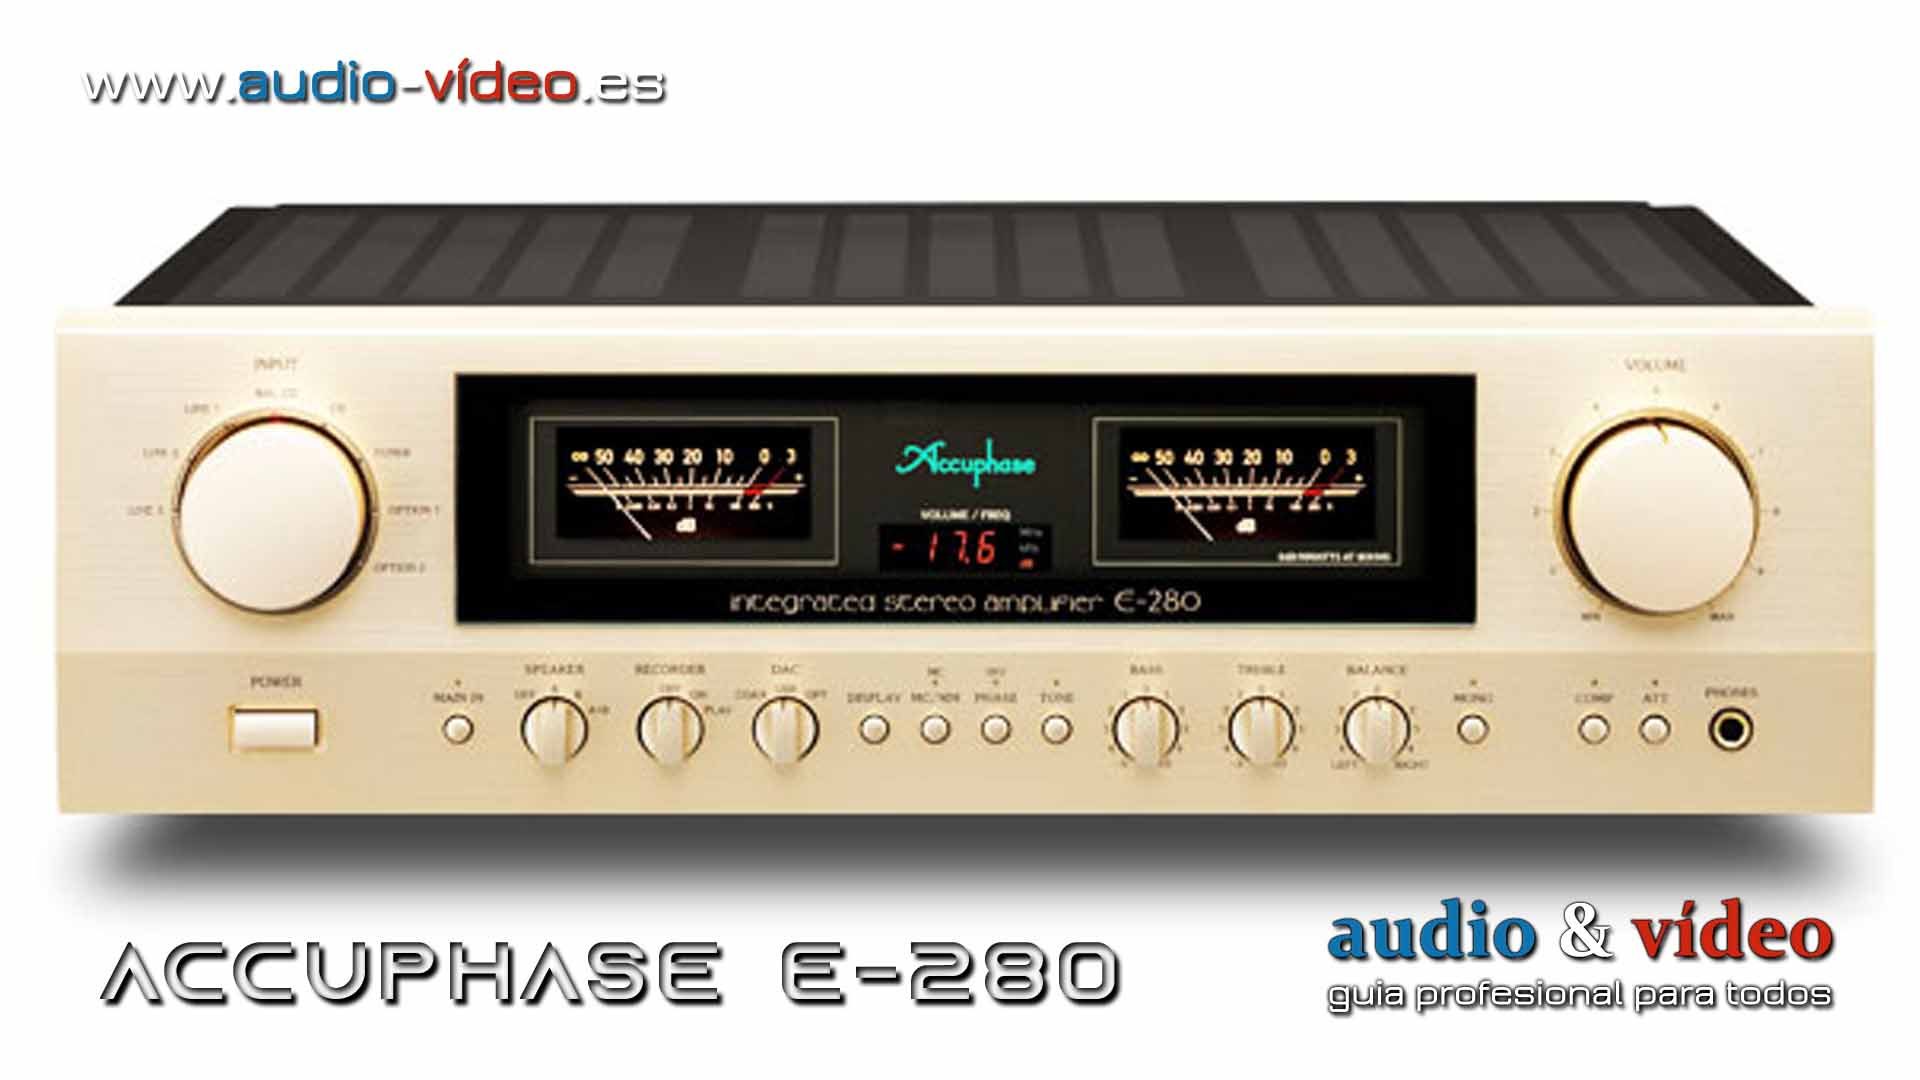 Amplificador integrado: ACCUPHASE E-280